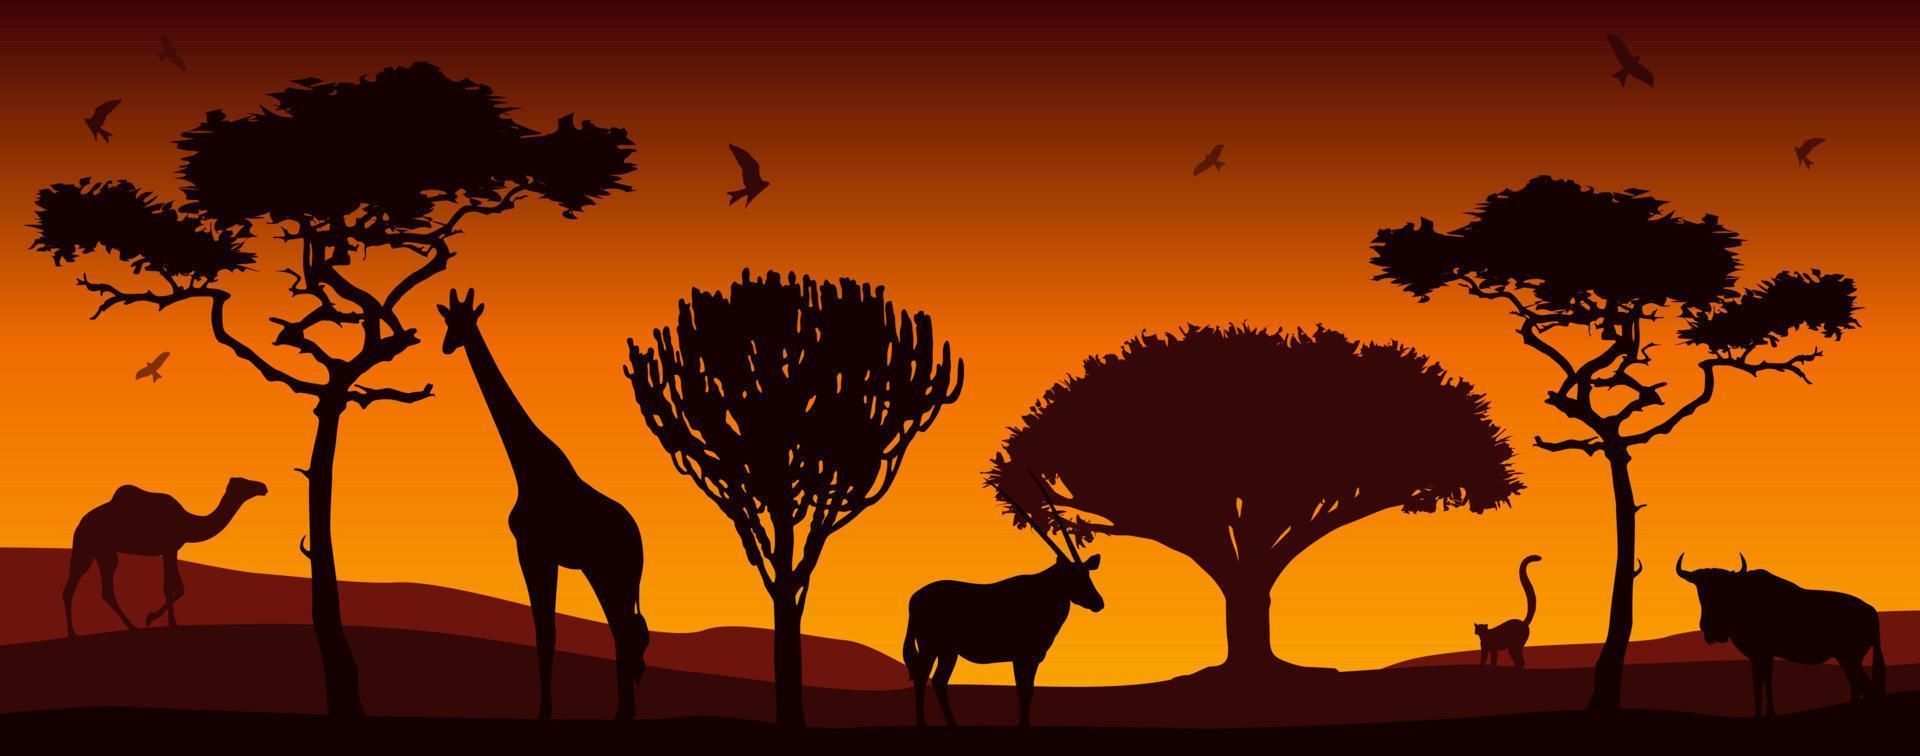 moderne Kunst mit Silhouetten afrikanischer Tiere und afrikanischer Bäume. schöne illustration mit sonnenuntergang in afrika. Vektor-Illustration vektor